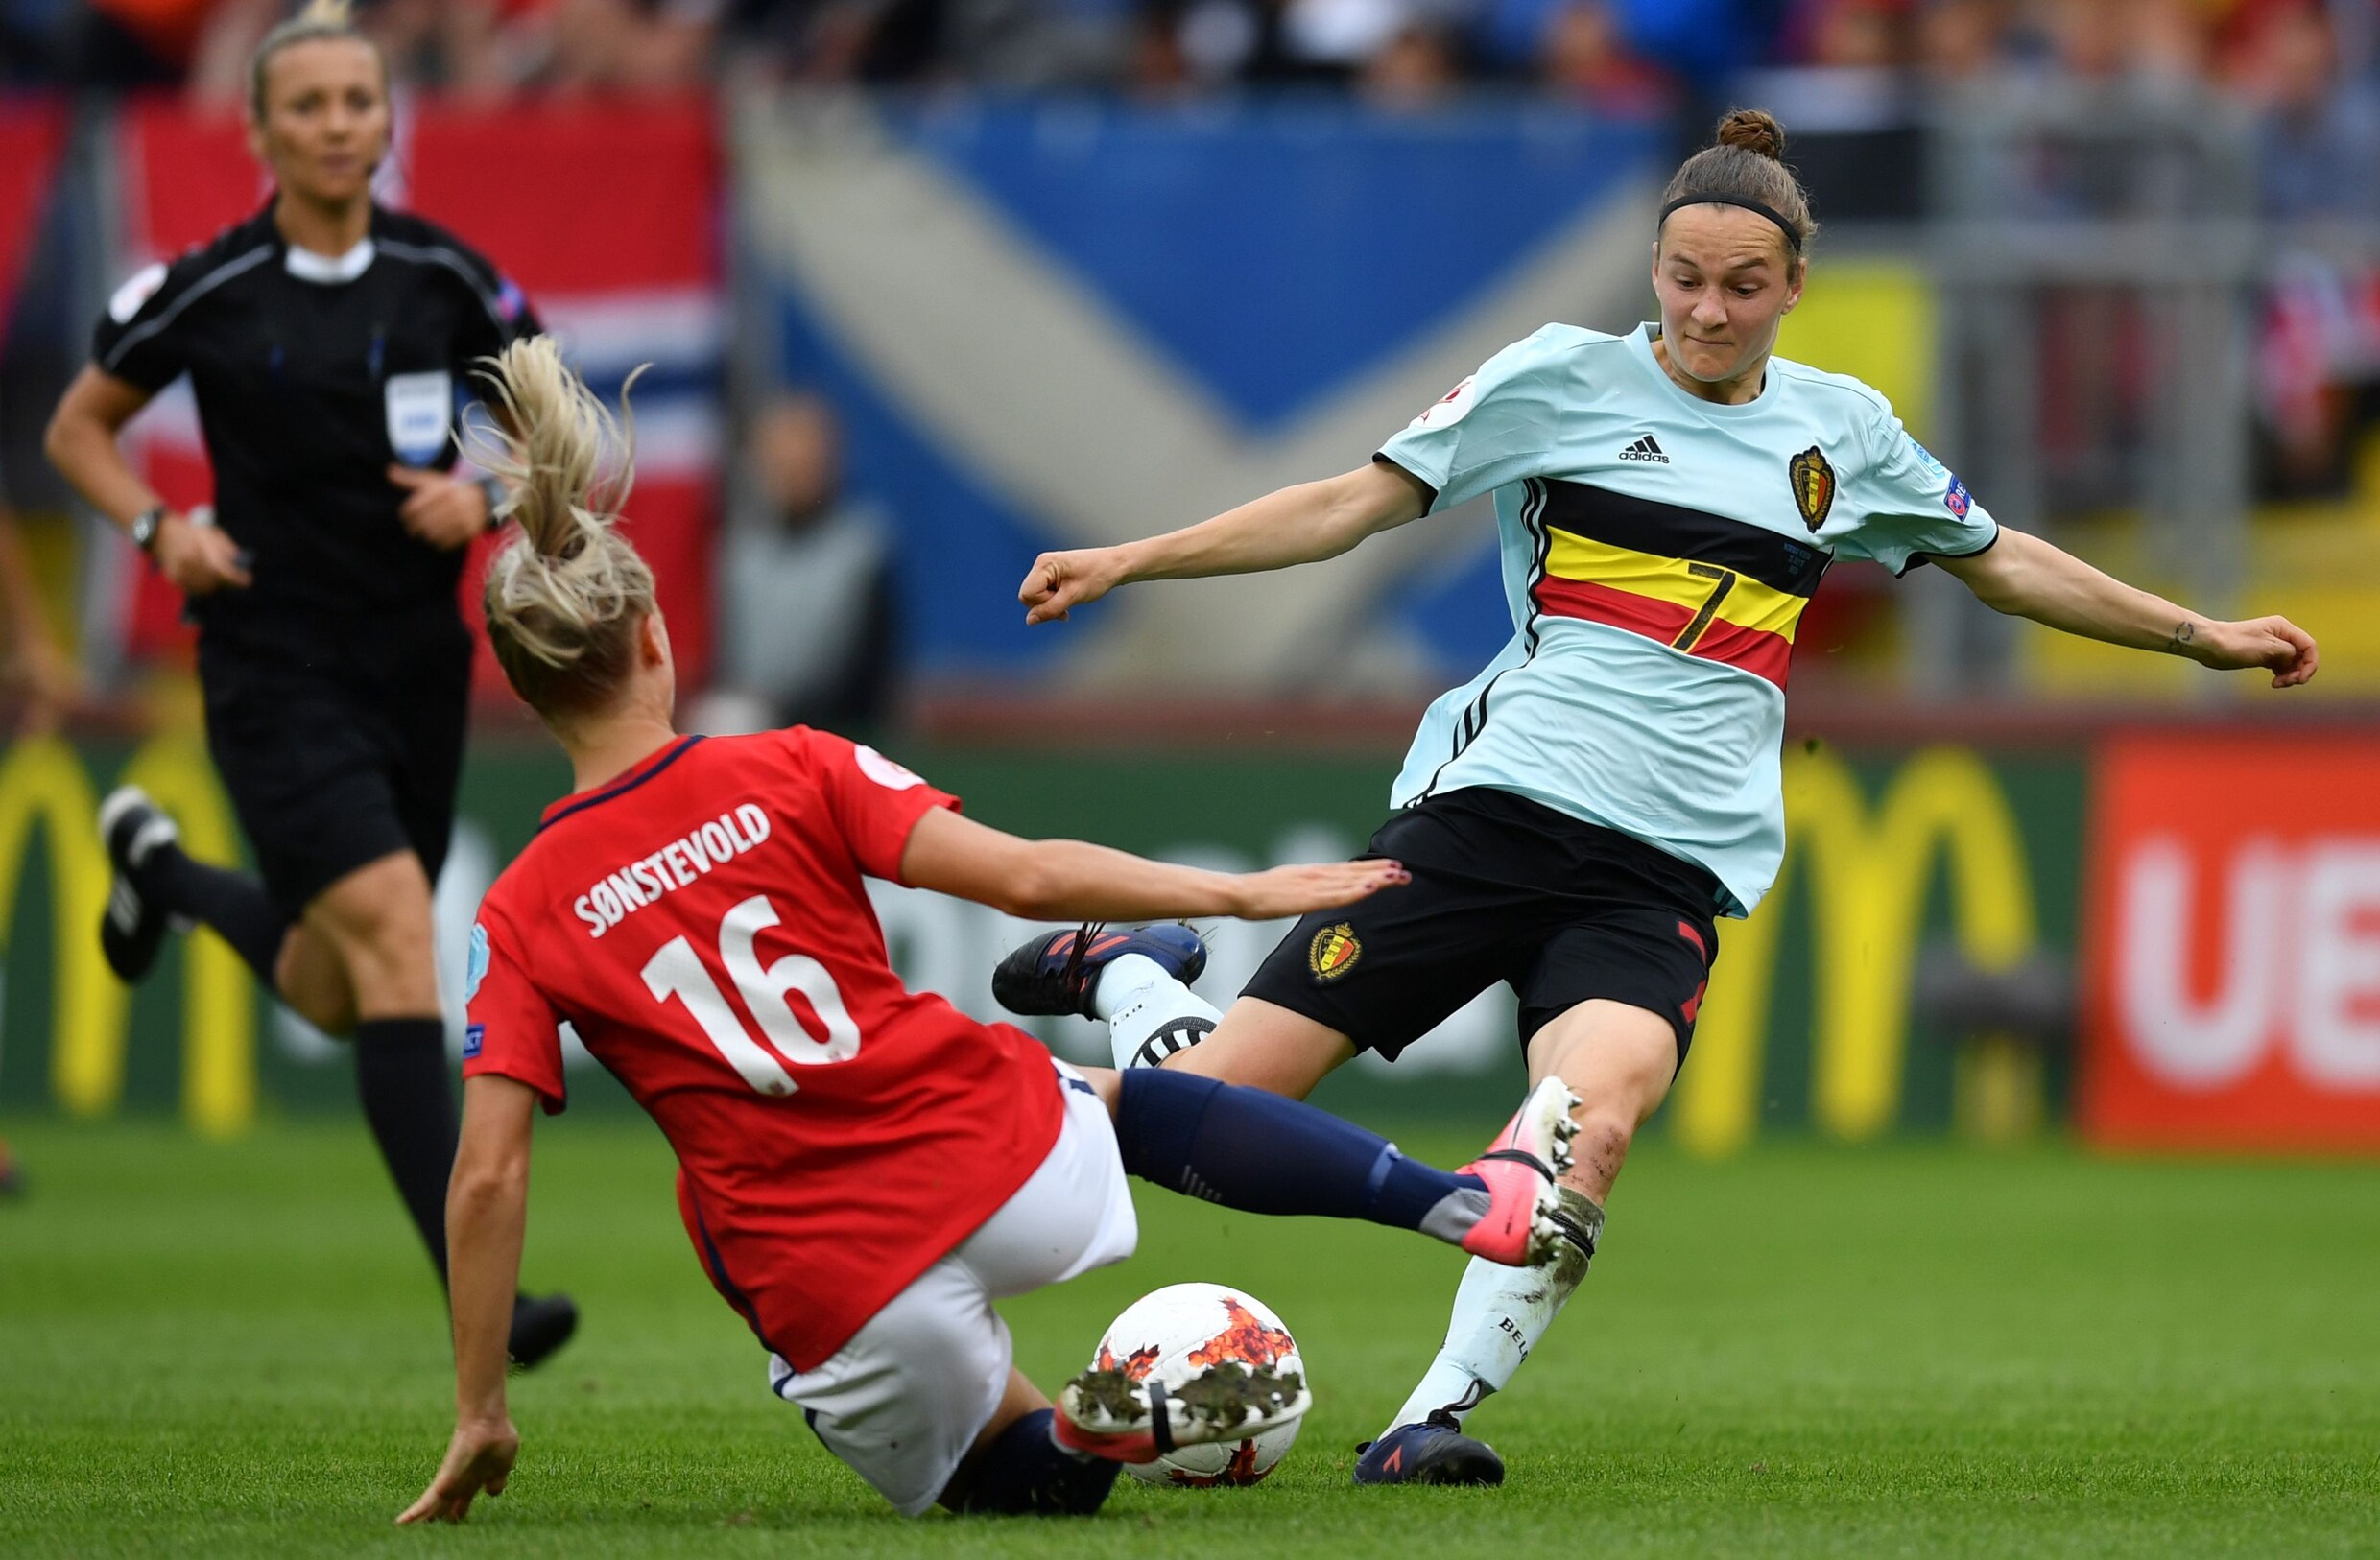 Eerste Belgisch EK-doelpunt ooit voor Van Gorp: "Dit geeft een supergevoel"